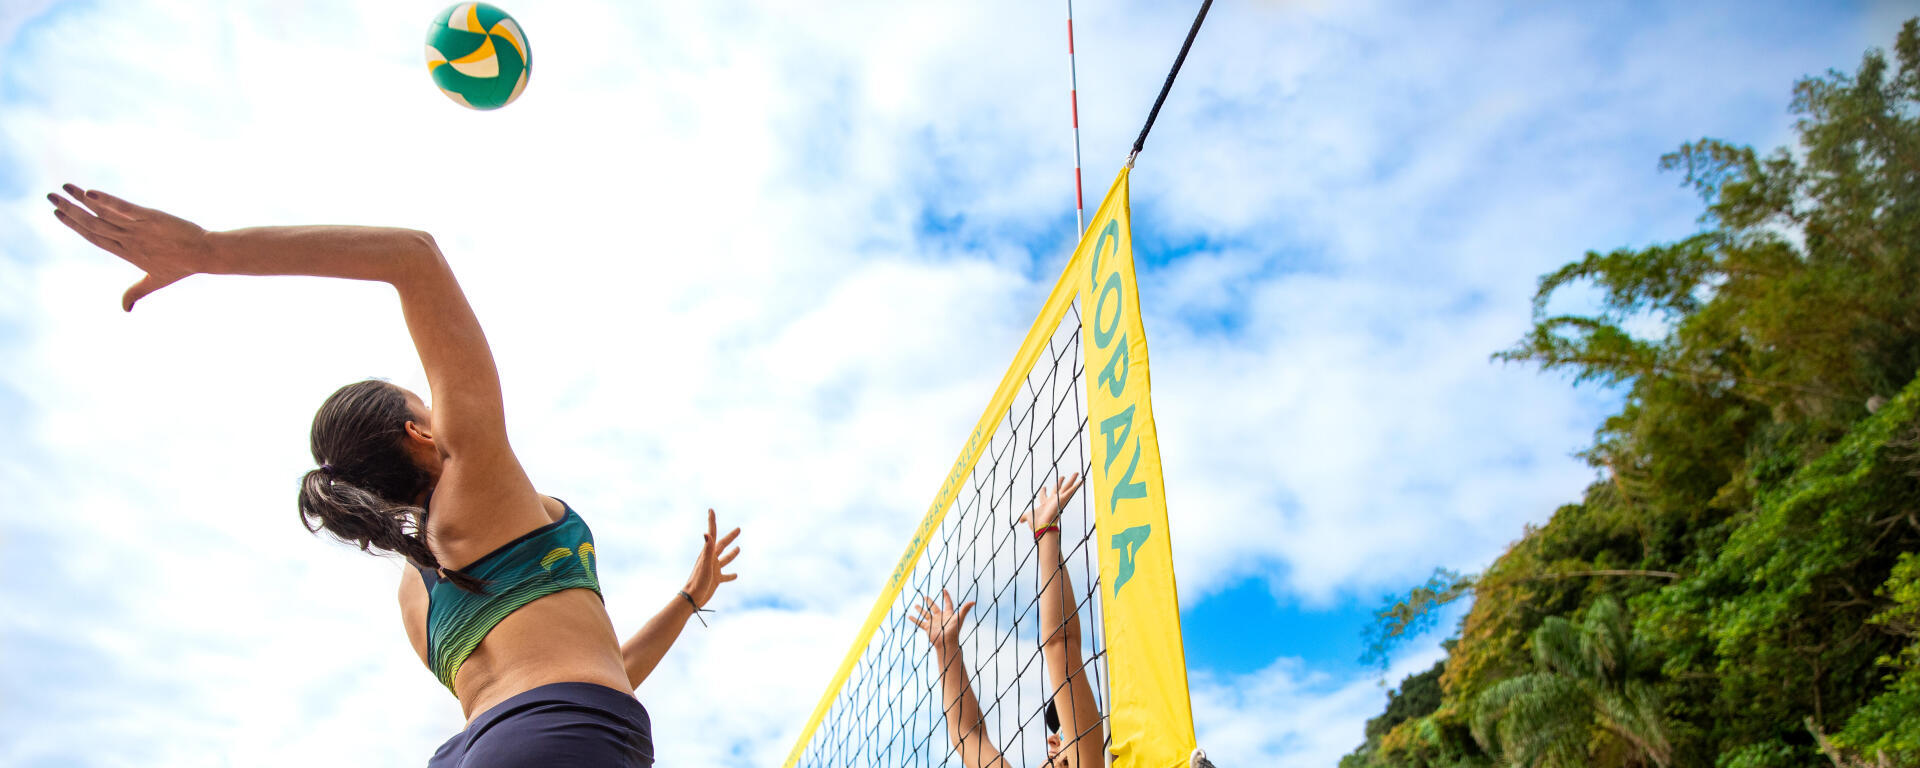 Quelles sont les règles du beach-volley?